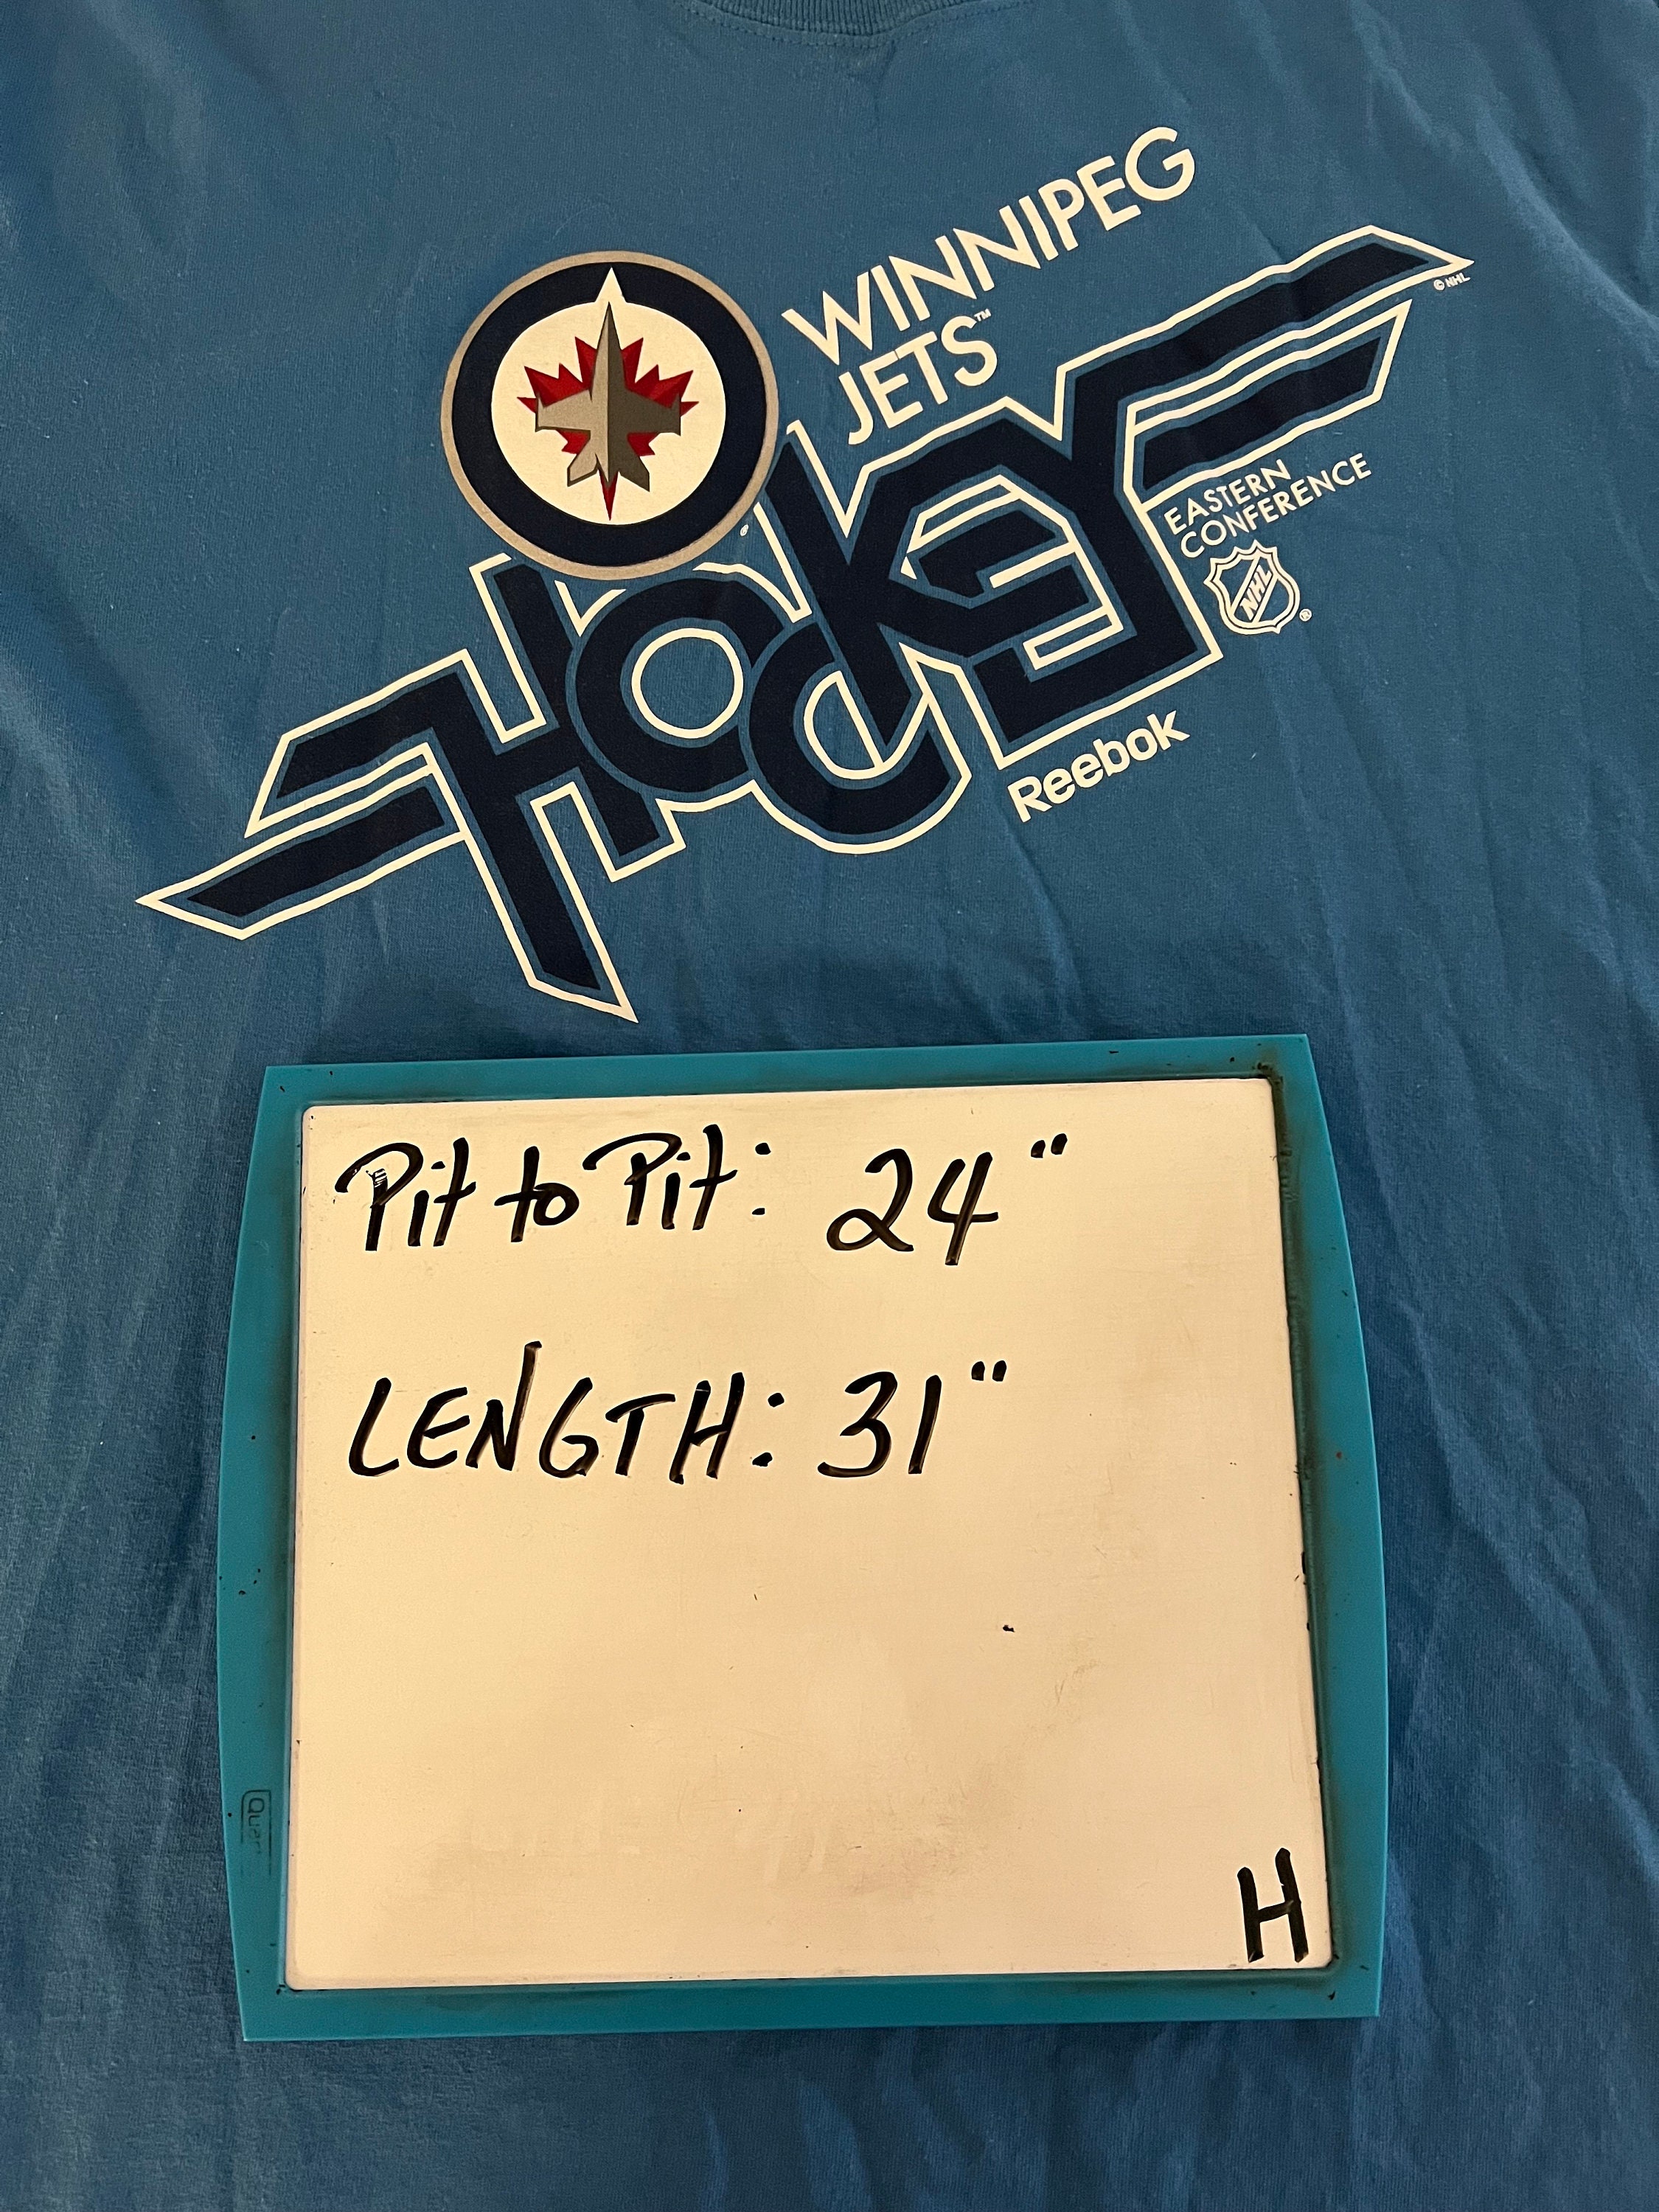 Reebok Winnipeg Jets NHL Fan Shop